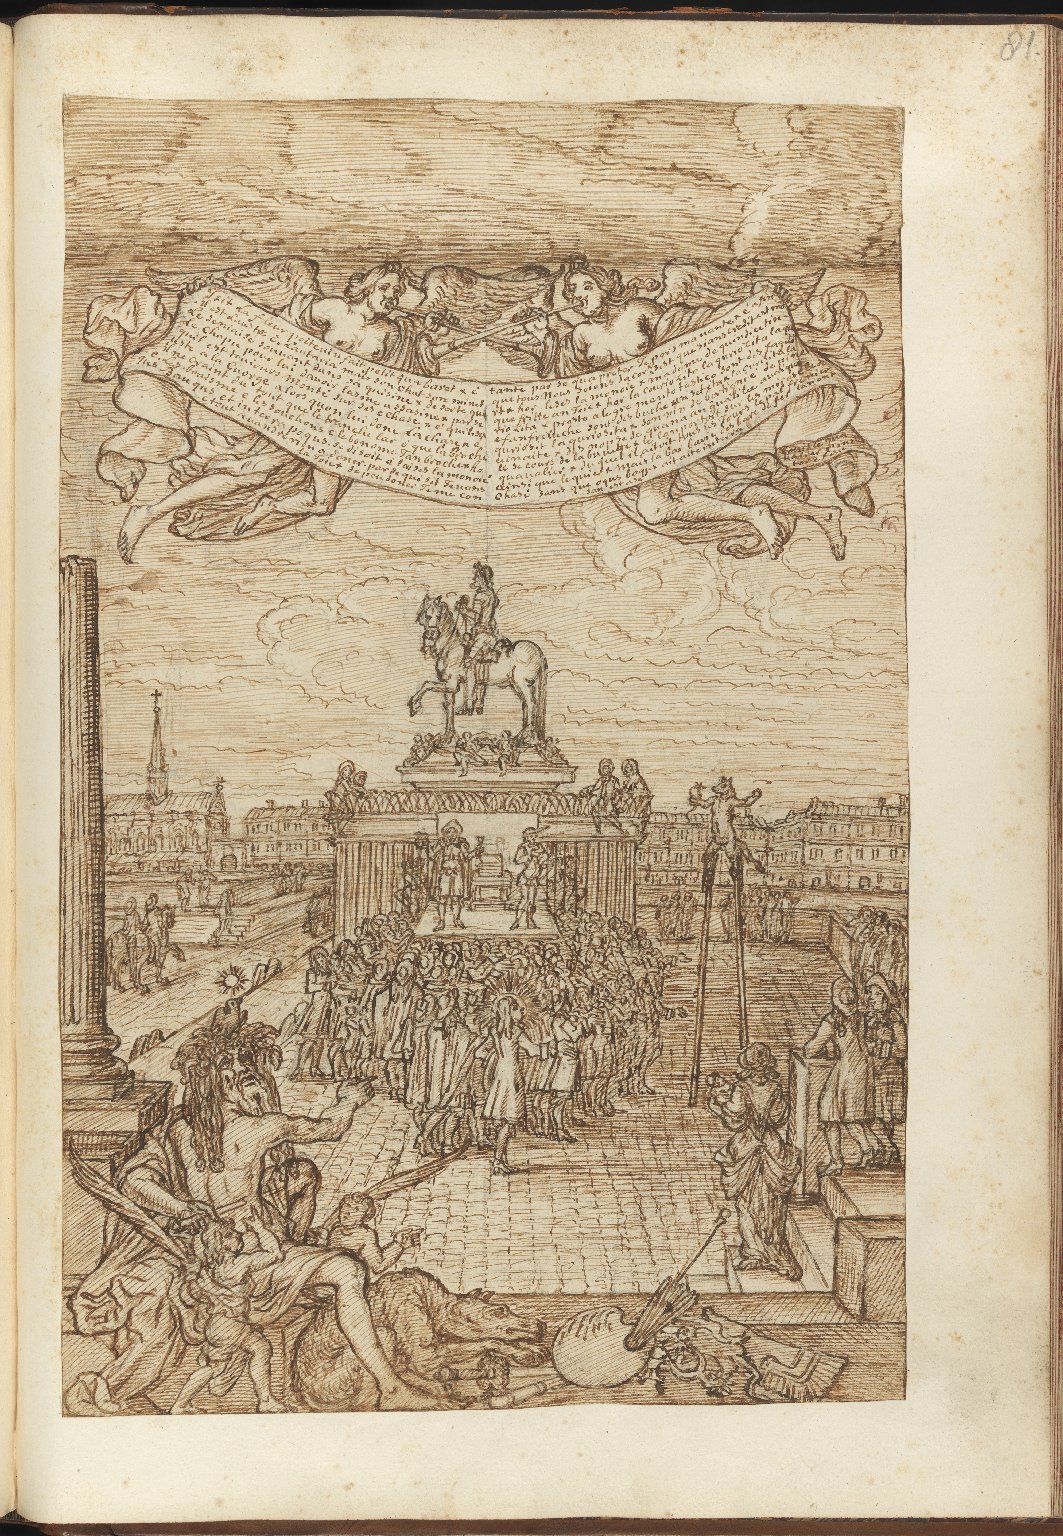 Recueil de Desseins Ridicules par le nomme Foque peintre de l'Academie Royale, mort aux Petites maisons vers l'annee 1695, f.81r